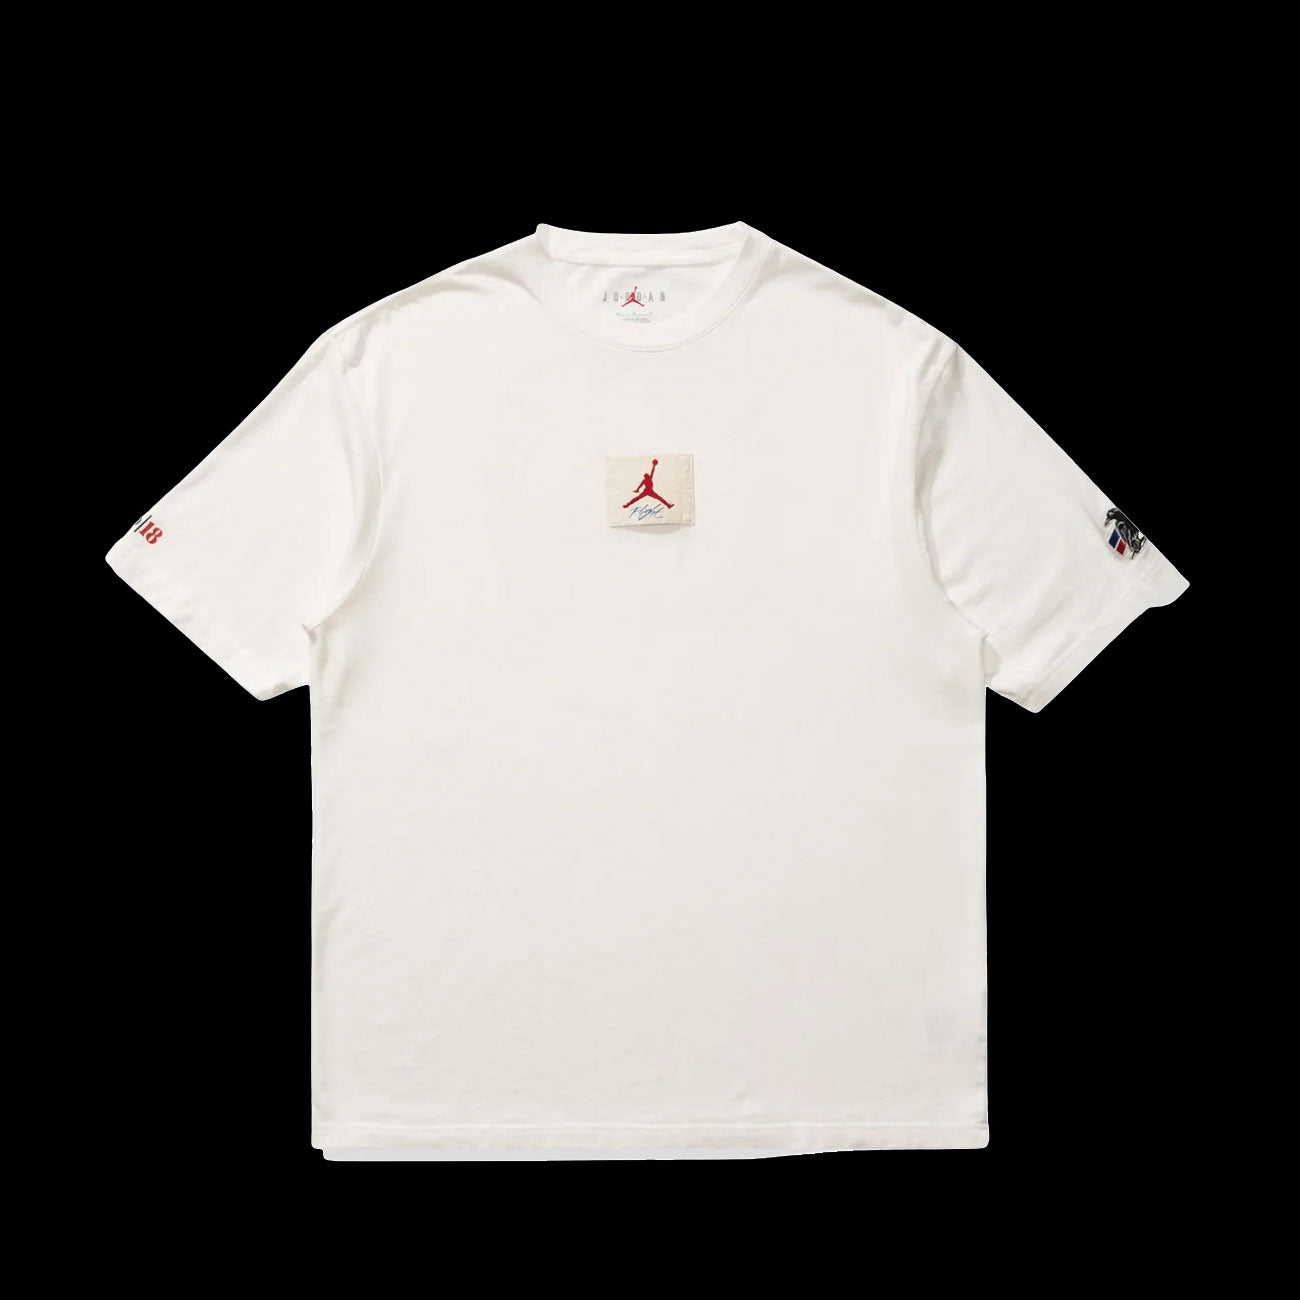 AJ2 x Two18 T-Shirt (Sail)